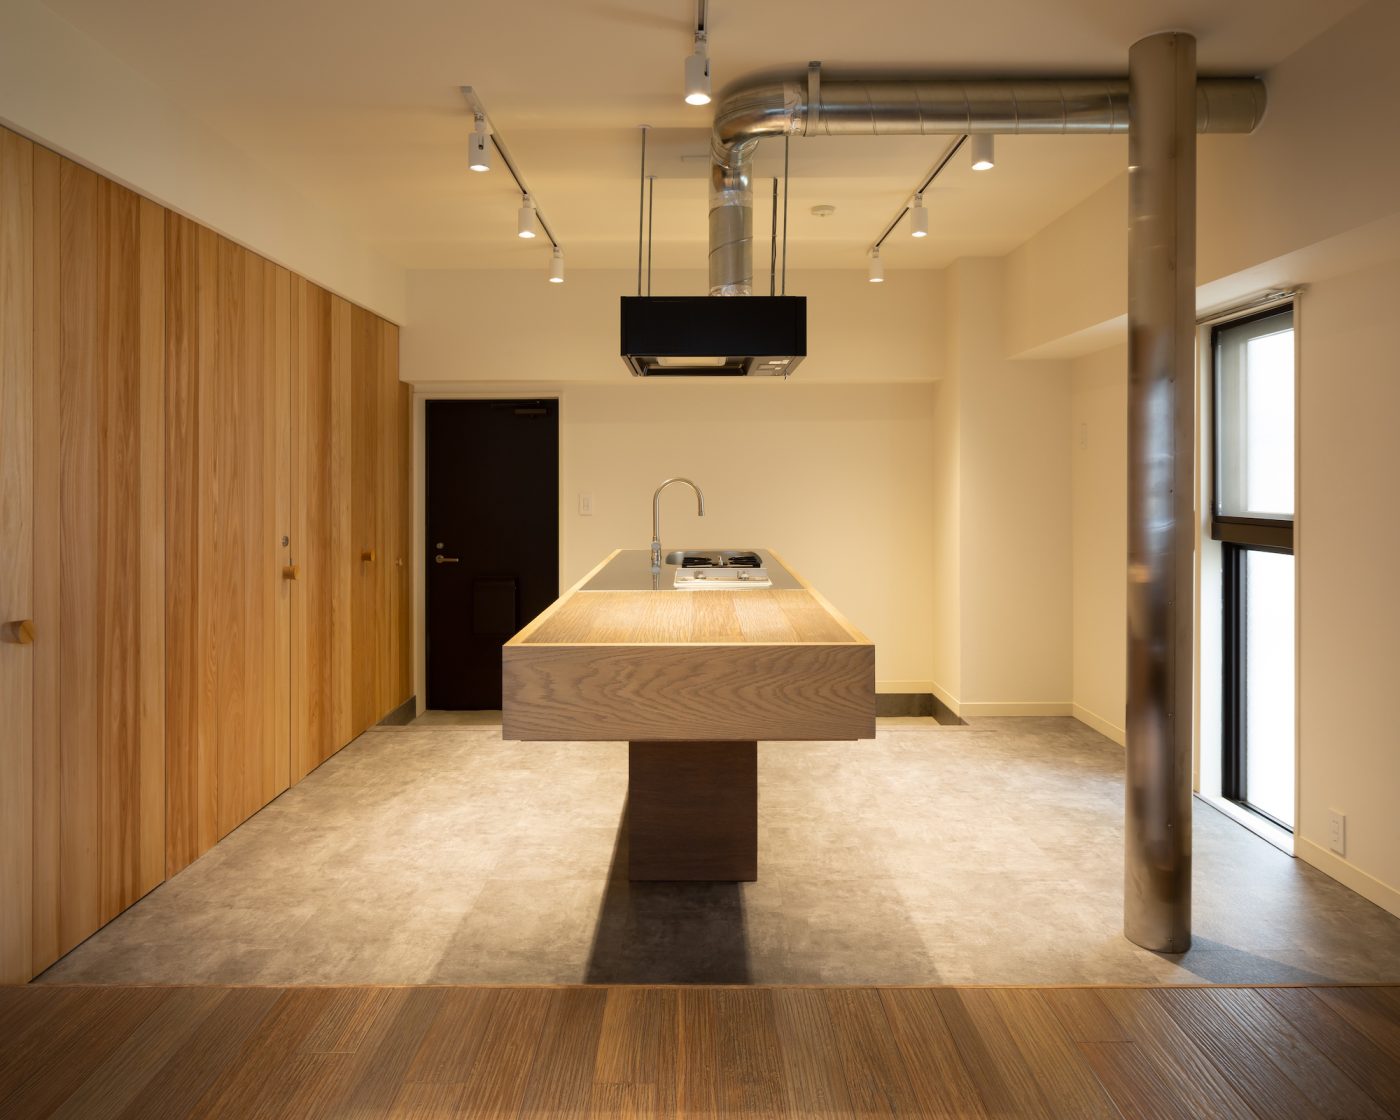 扉を開けた途端、広がる印象的なキッチンスペース。床を異素材にすることで、壁やキッチンの木の素材感が際立っています。